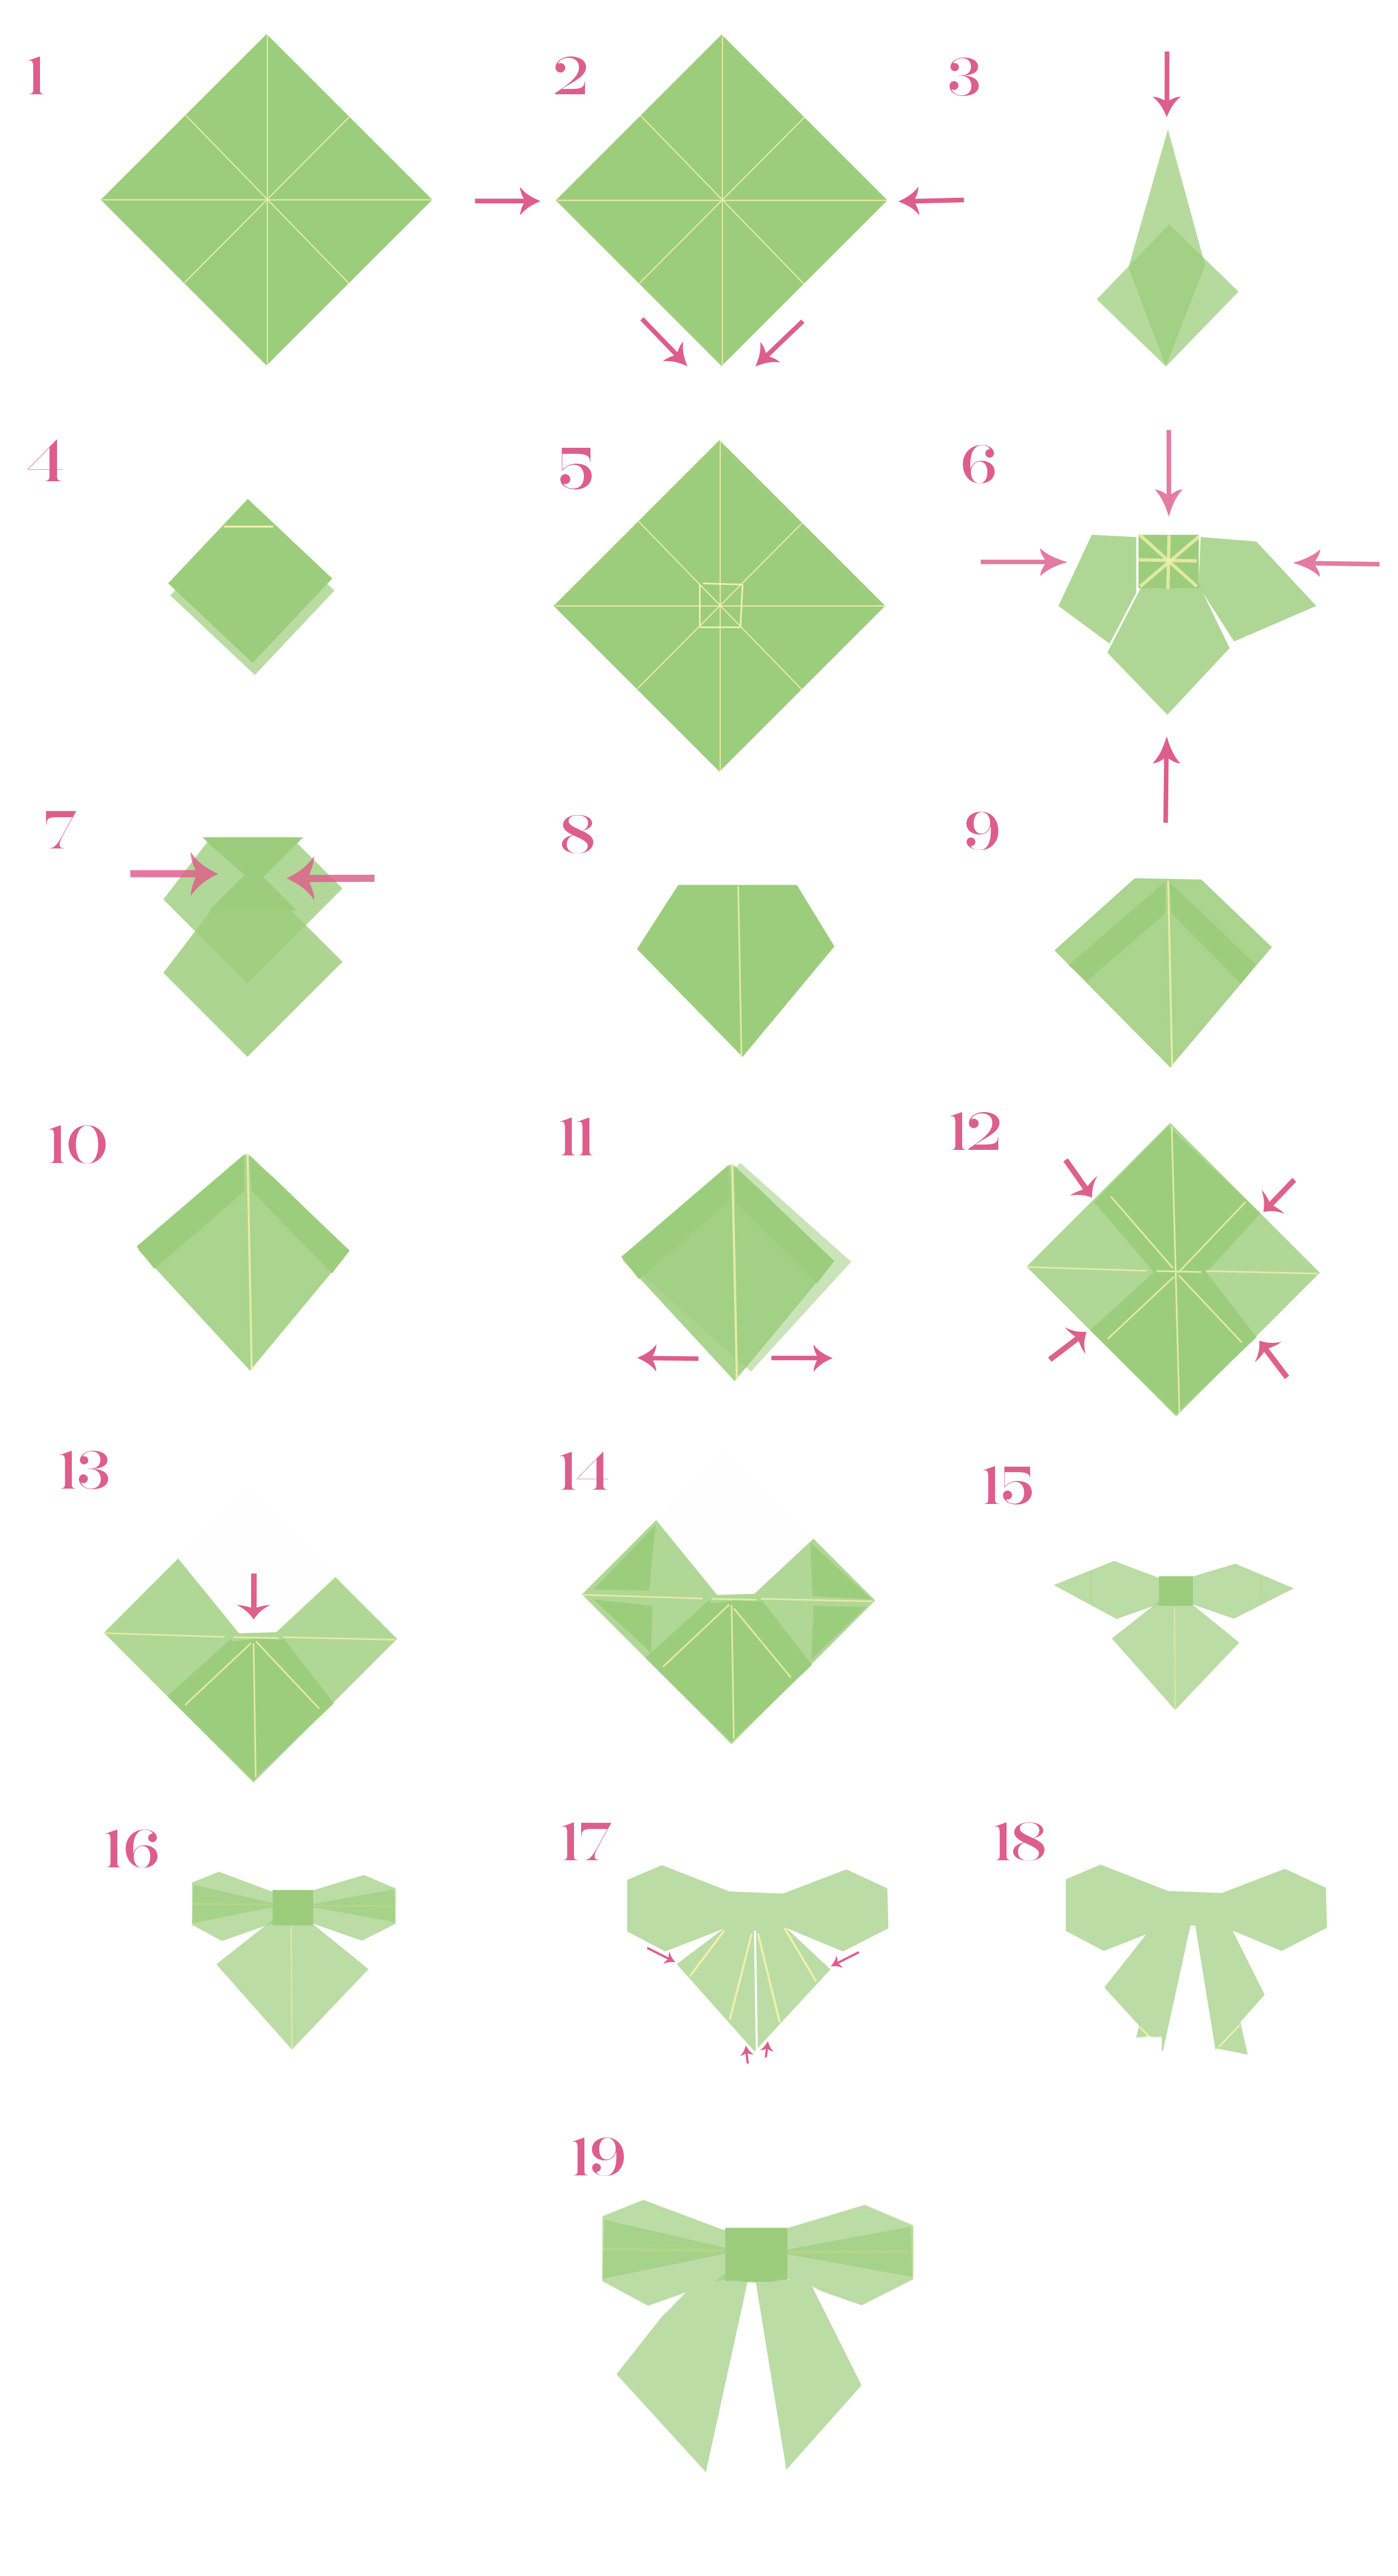 Origami Bow Instructions Make An Origami Bow Kiwi Magazine Kiwi Magazine